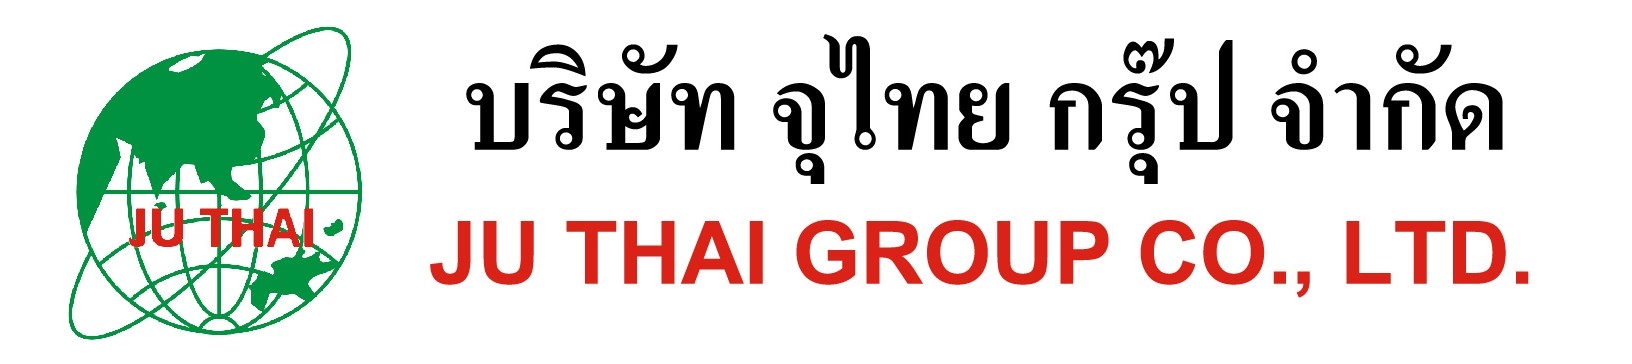 JUTHAI GROUP CO.,LTD.